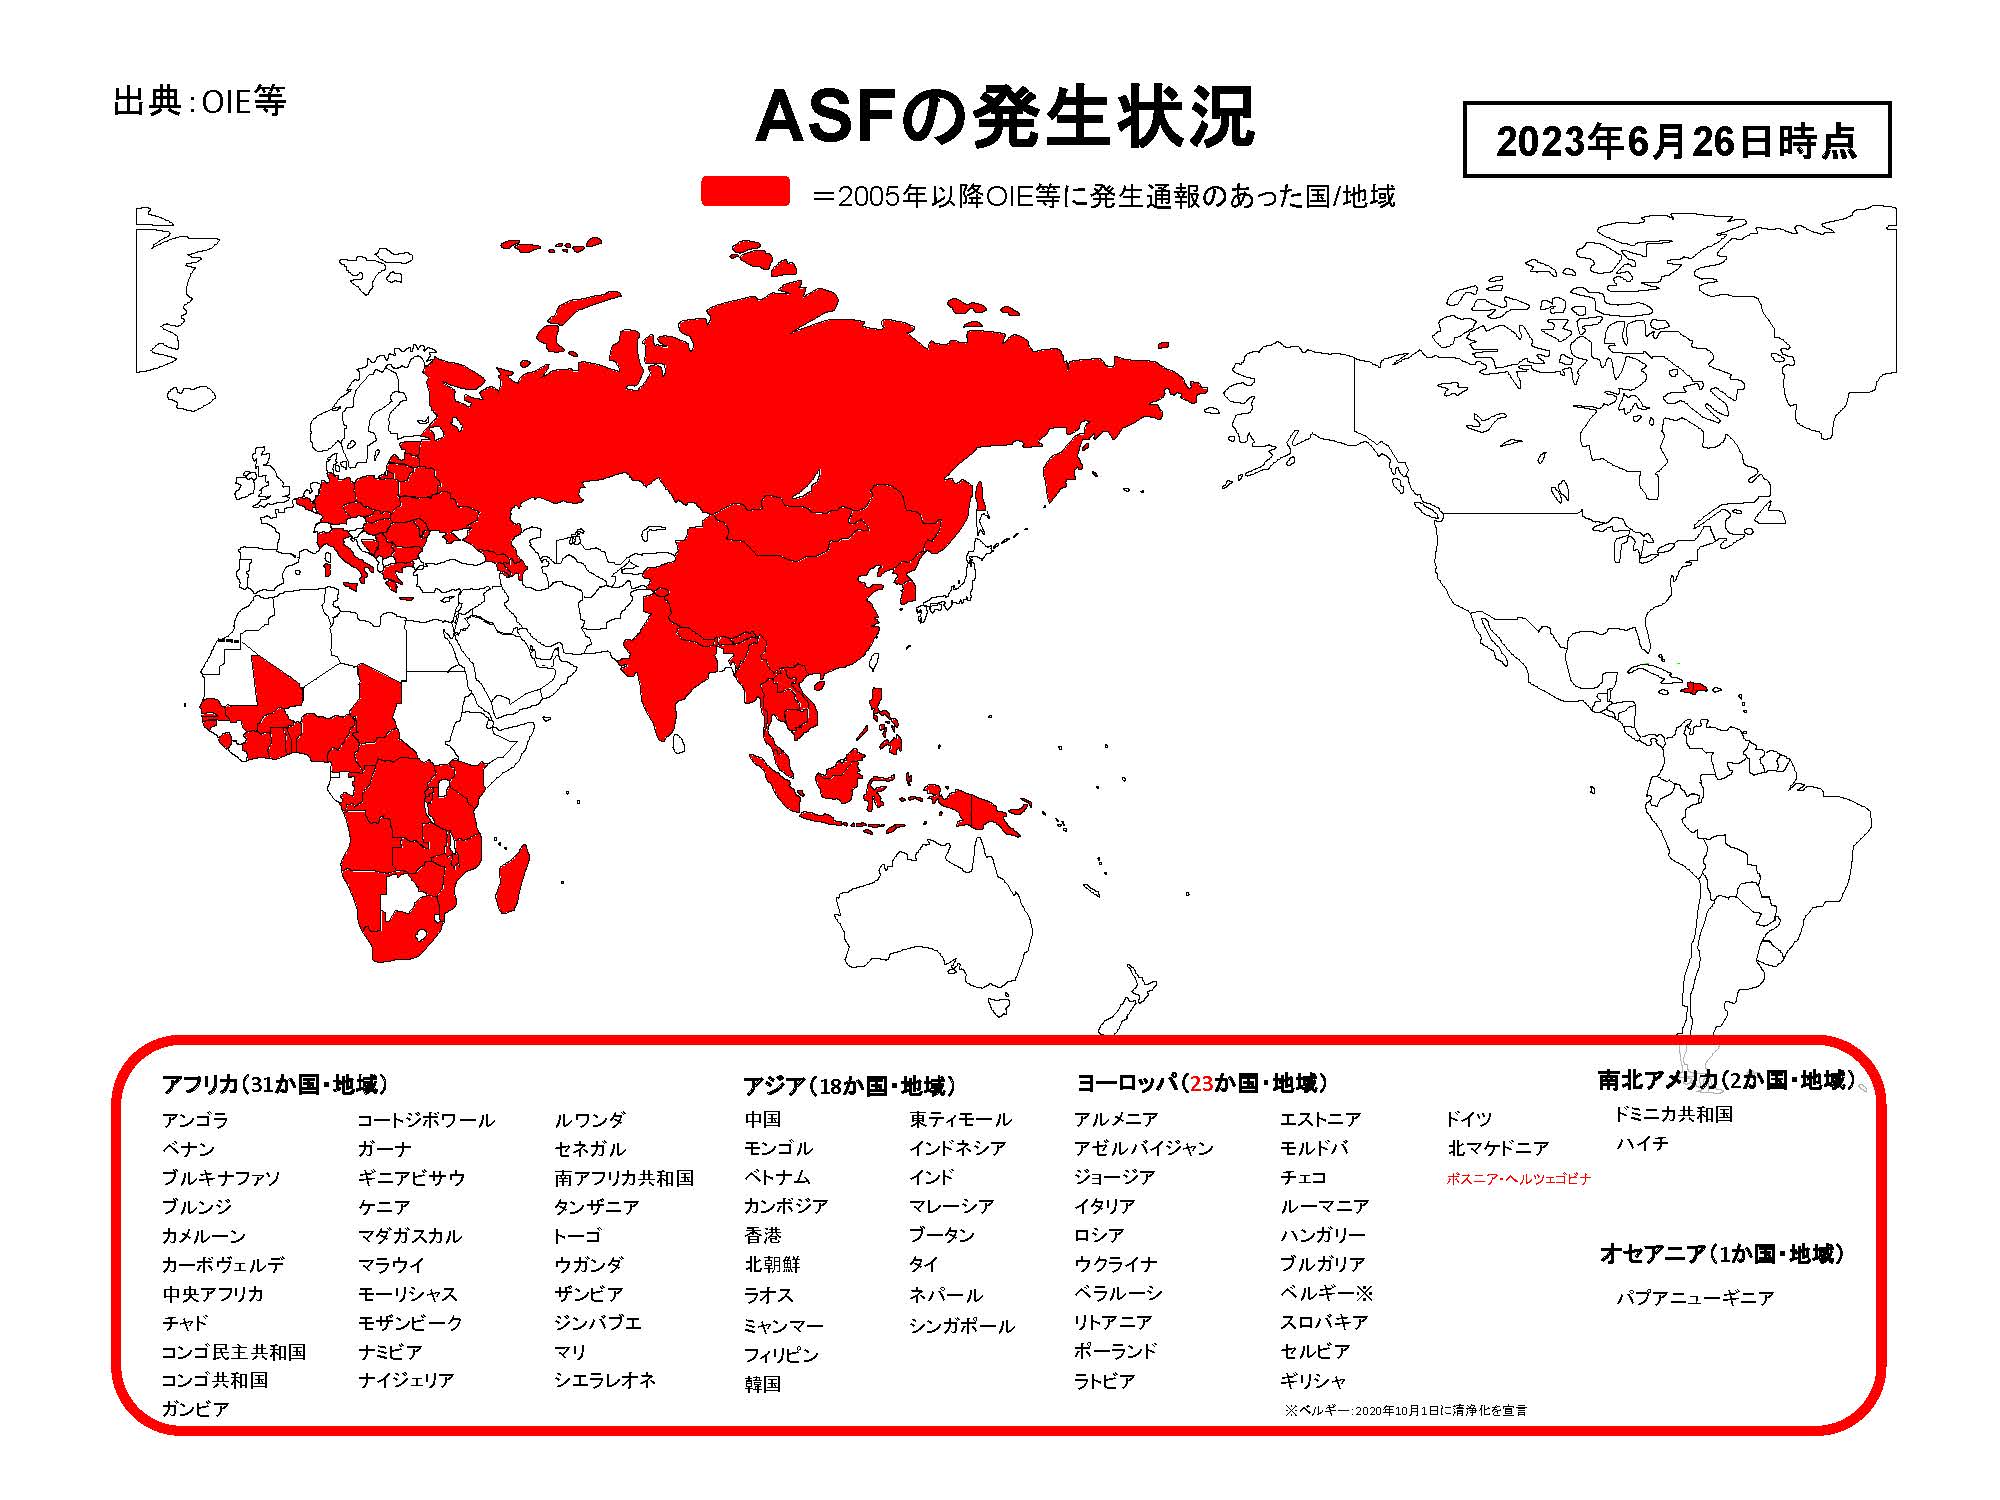 2022年5月19日現在のASFの発生状況を示した世界地図のイラスト（提供は農林水産省、出典はOIE等）。